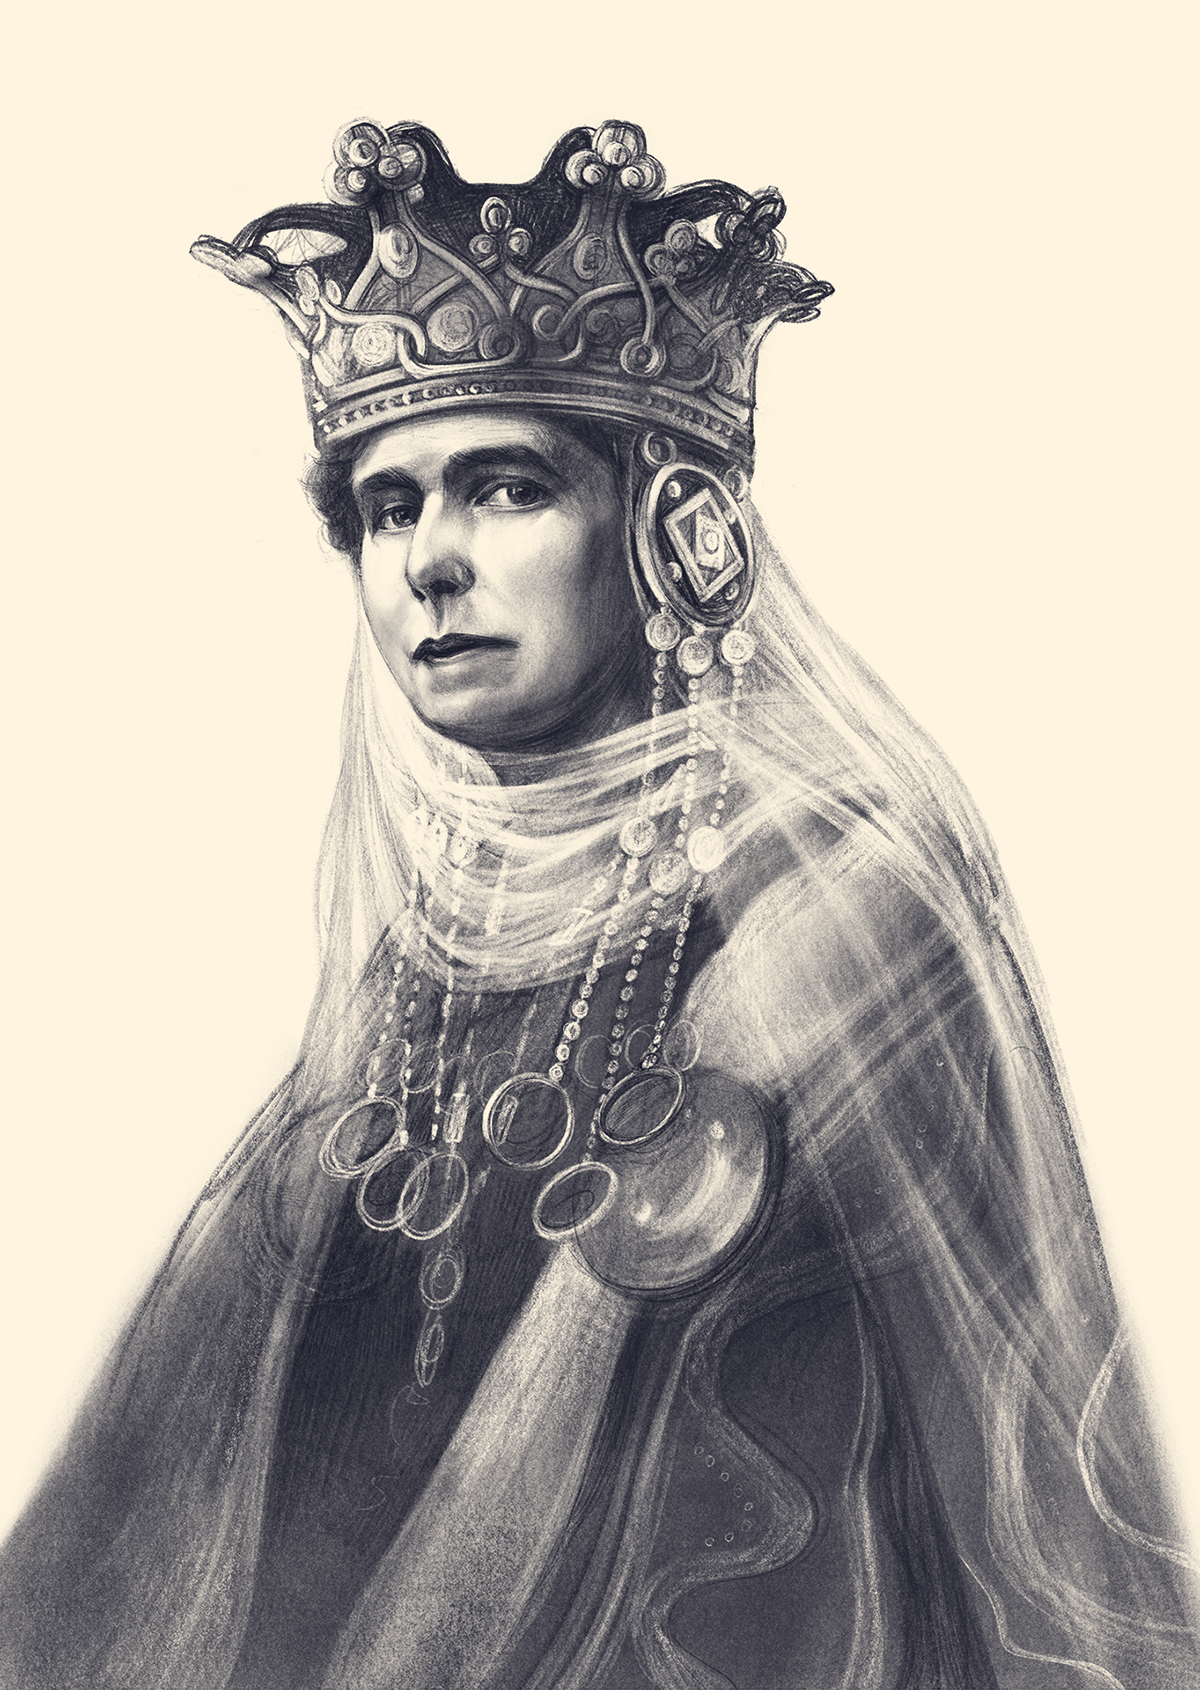 Digital pencil portrait of Queen Marie of Romania